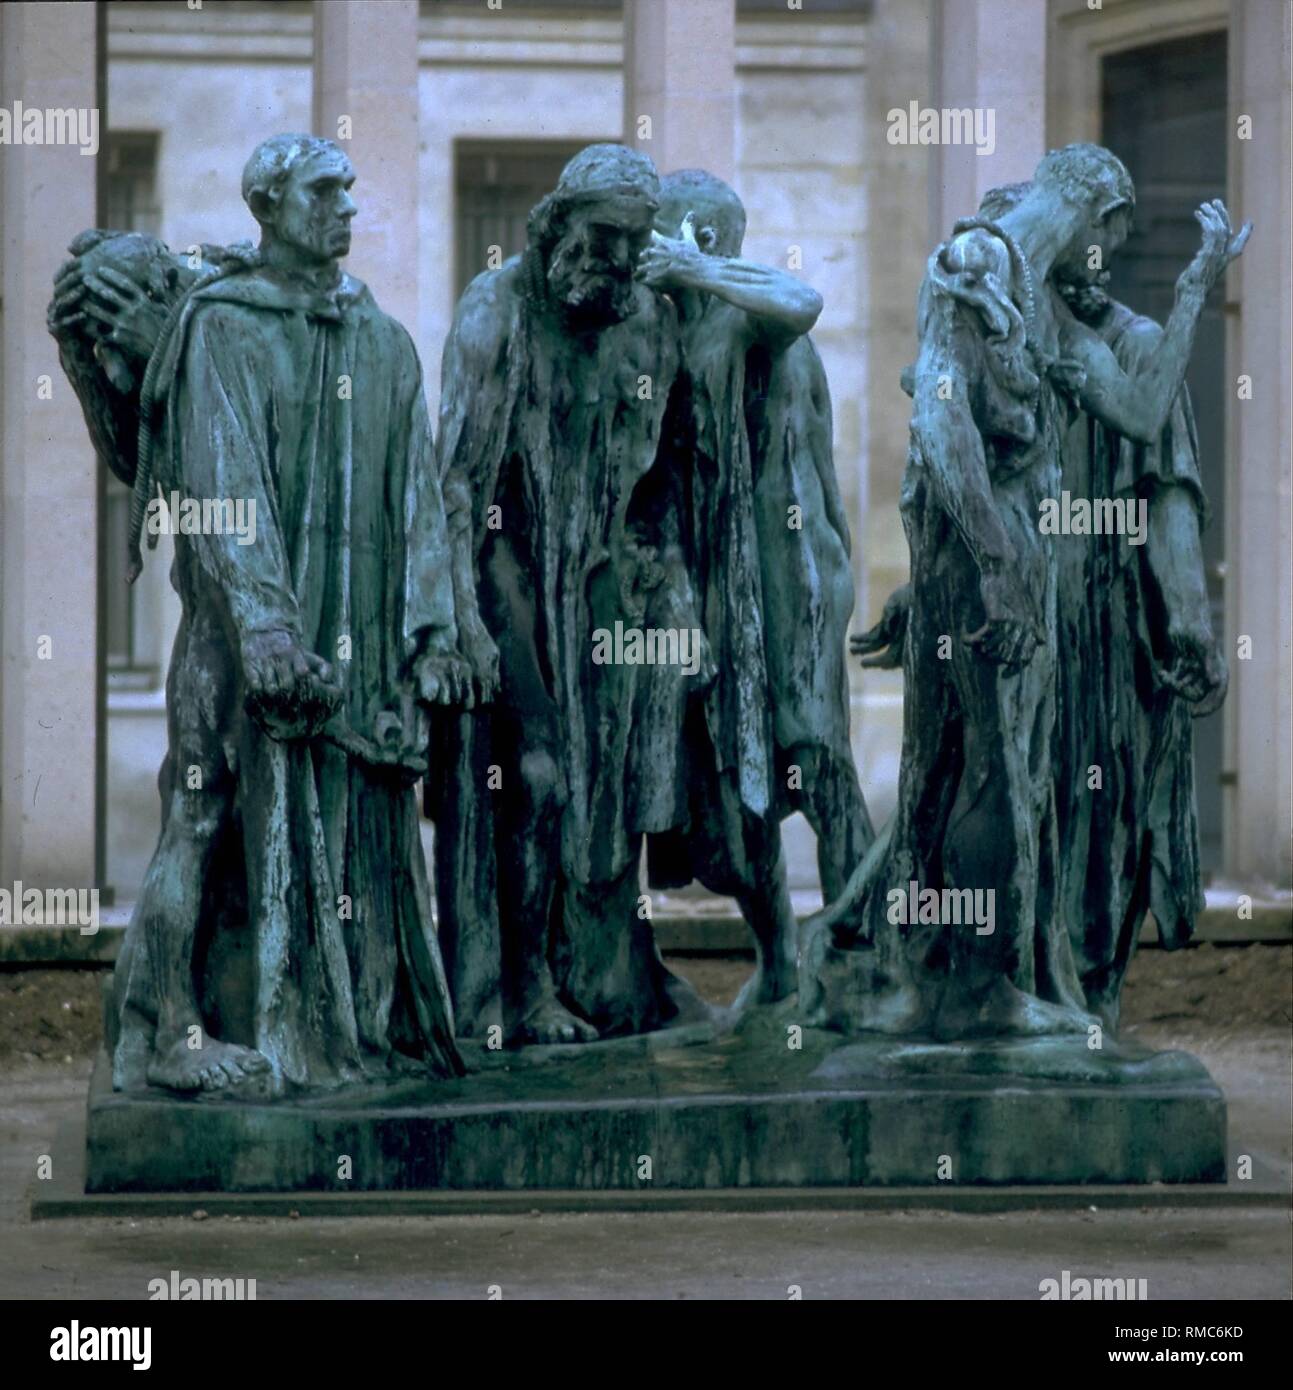 Der französische Bildhauer Auguste Rodin (1840-1917), beendet die "Bürger  von Calais", einem seiner wichtigsten Werke, im Jahr 1886. Die Gruppe von  Skulpturen aus Bronze wurde in Calais 1895 mit Repliken in Basel